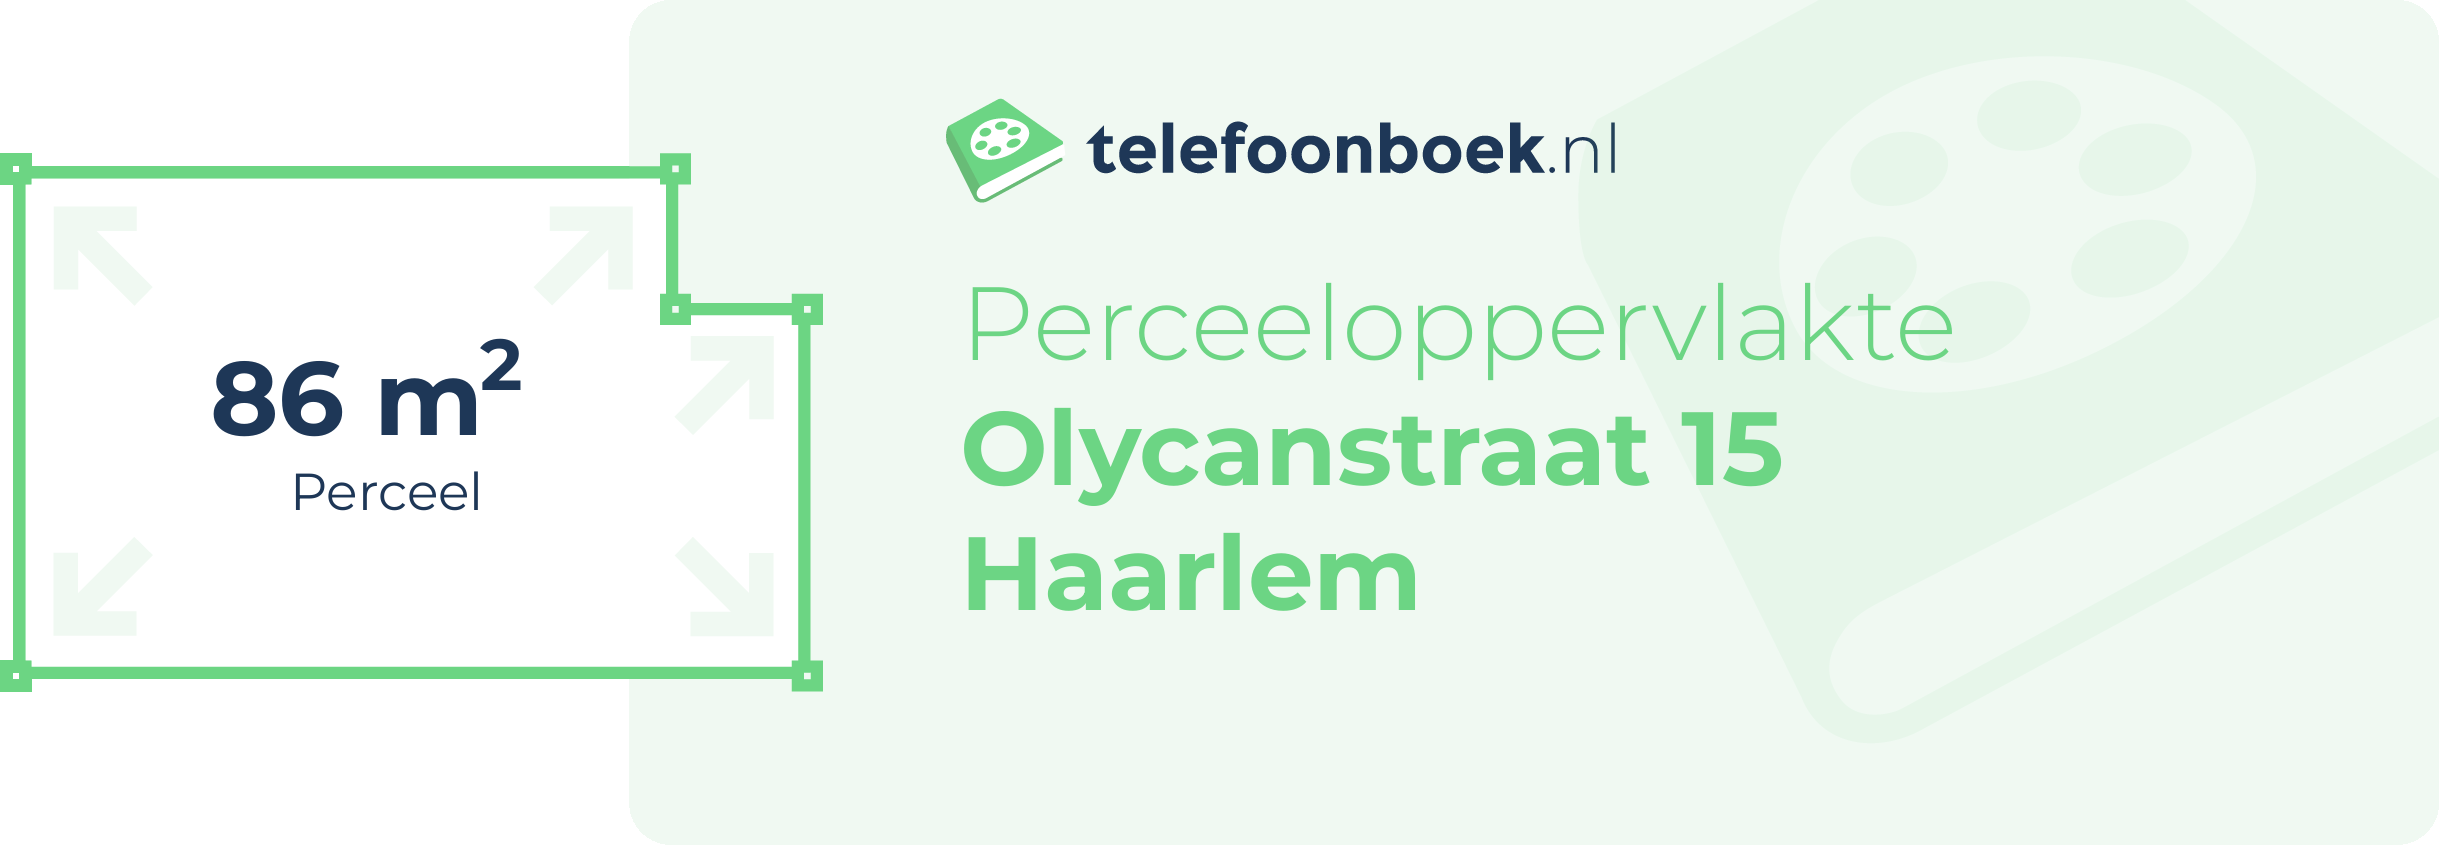 Perceeloppervlakte Olycanstraat 15 Haarlem